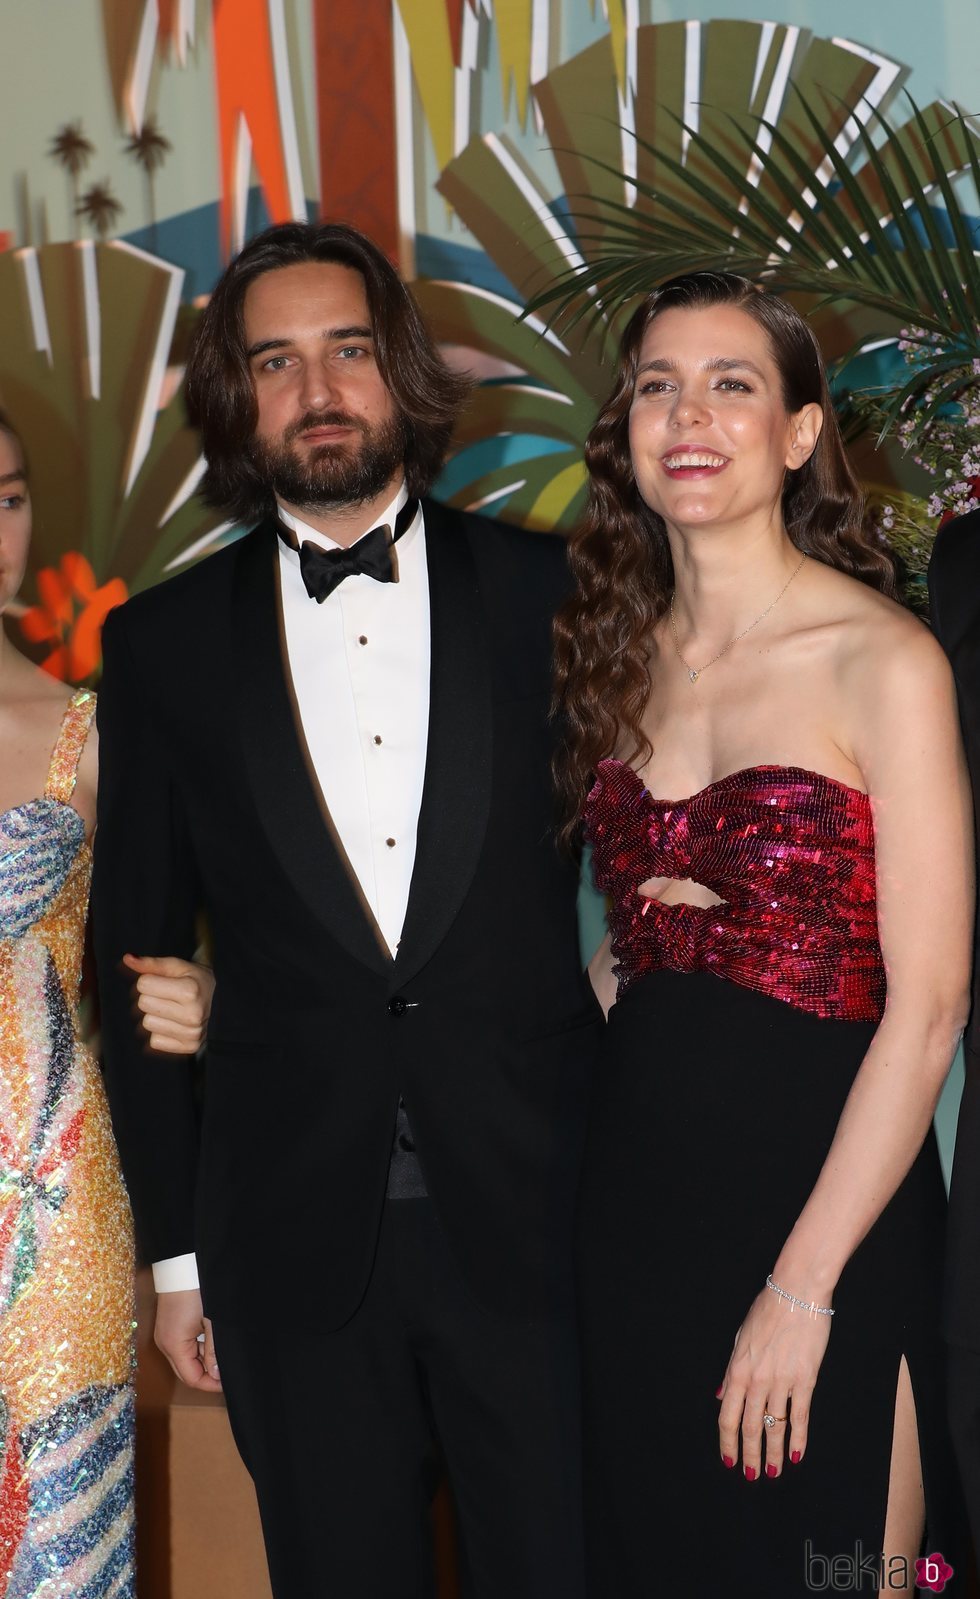 Carlota Casiraghi y Dimitri Rassam en el Baile de la Rosa 2019